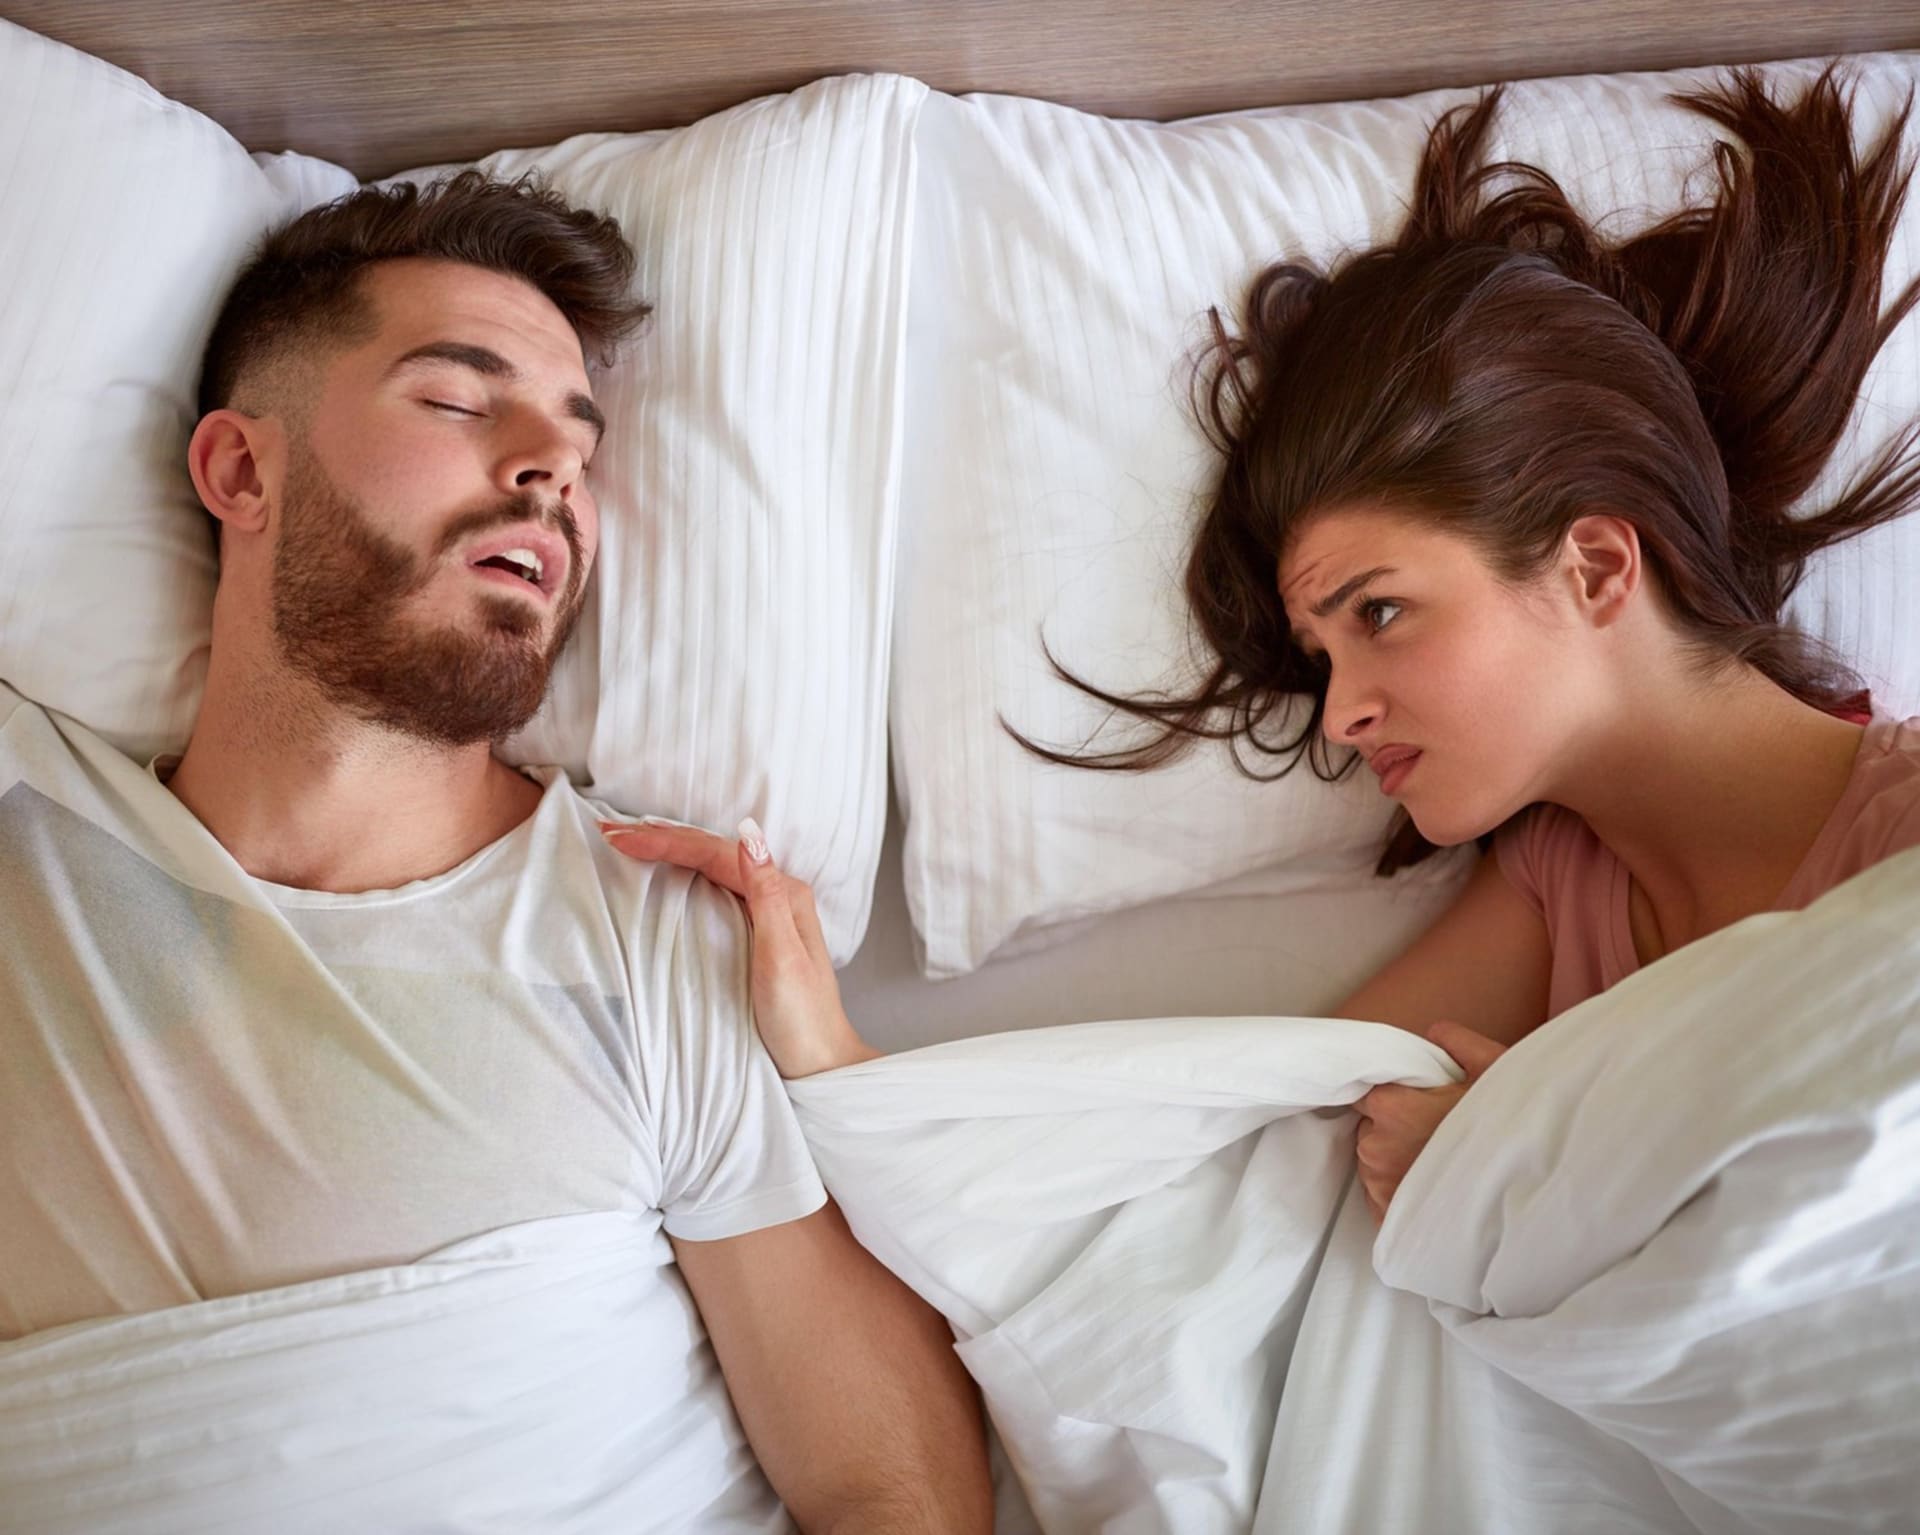 O oddělených ložnicích by měli uvažovat všichni, kteří jsou během spánku vystaveni partnerovu chrápání, přehnanému pohybu v prostorách postele, mluvení ze spaní a nočním návštěvám toalety.